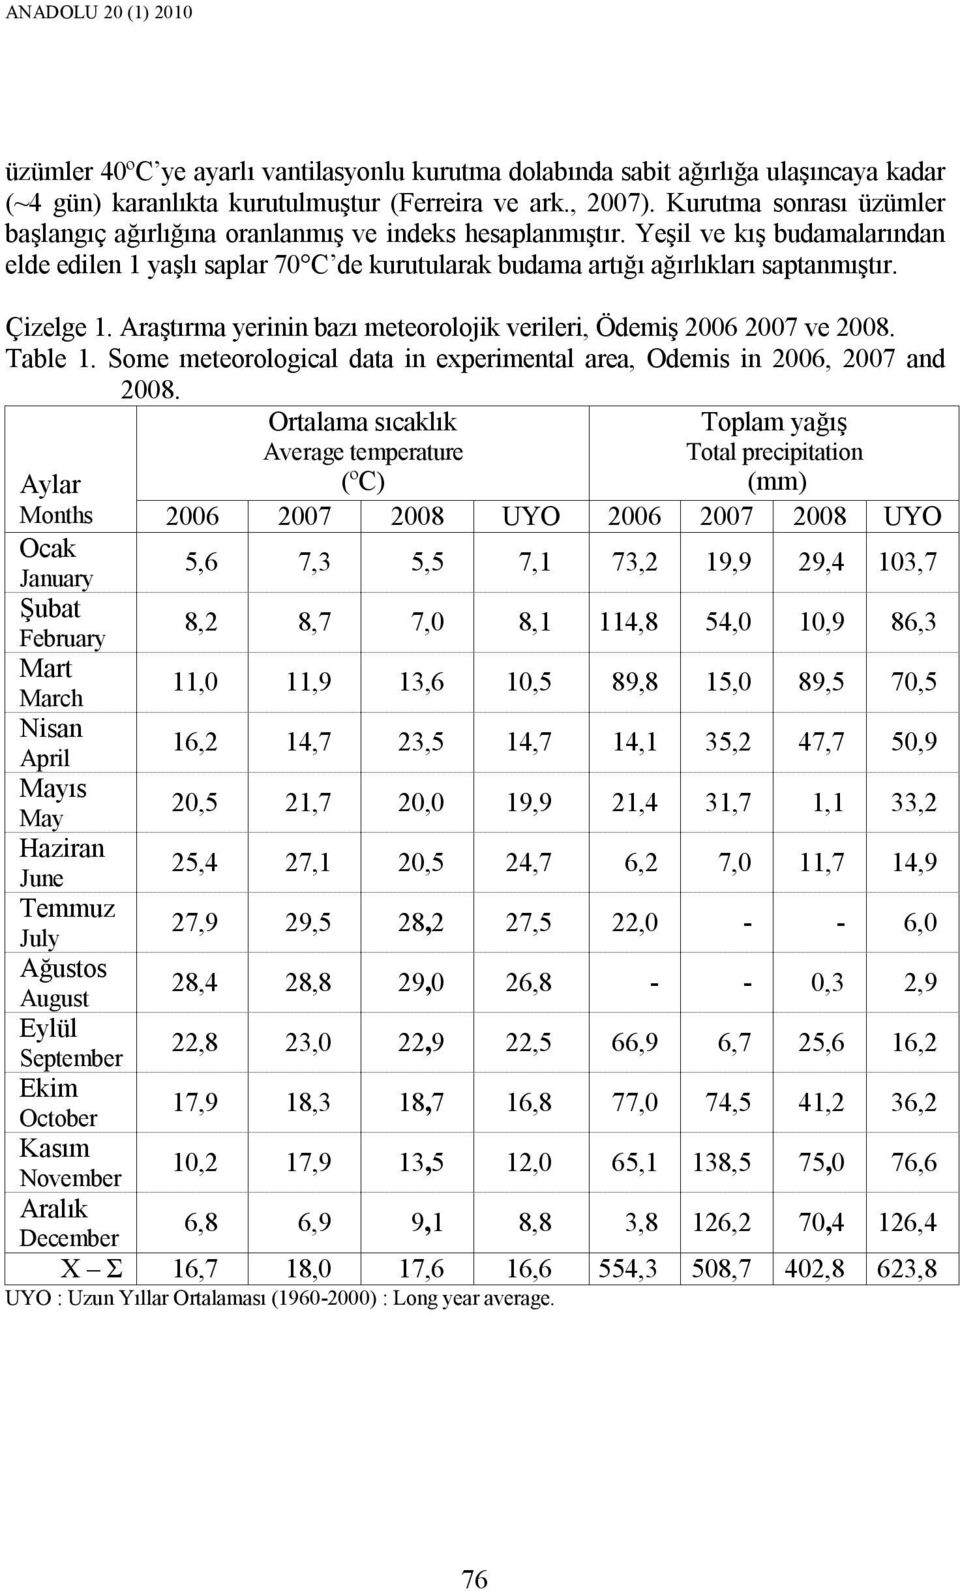 Çizelge 1. Araştırma yerinin bazı meteorolojik verileri, Ödemiş 2006 2007 ve 2008. Table 1. Some meteorological data in experimental area, Odemis in 2006, 2007 and 2008.